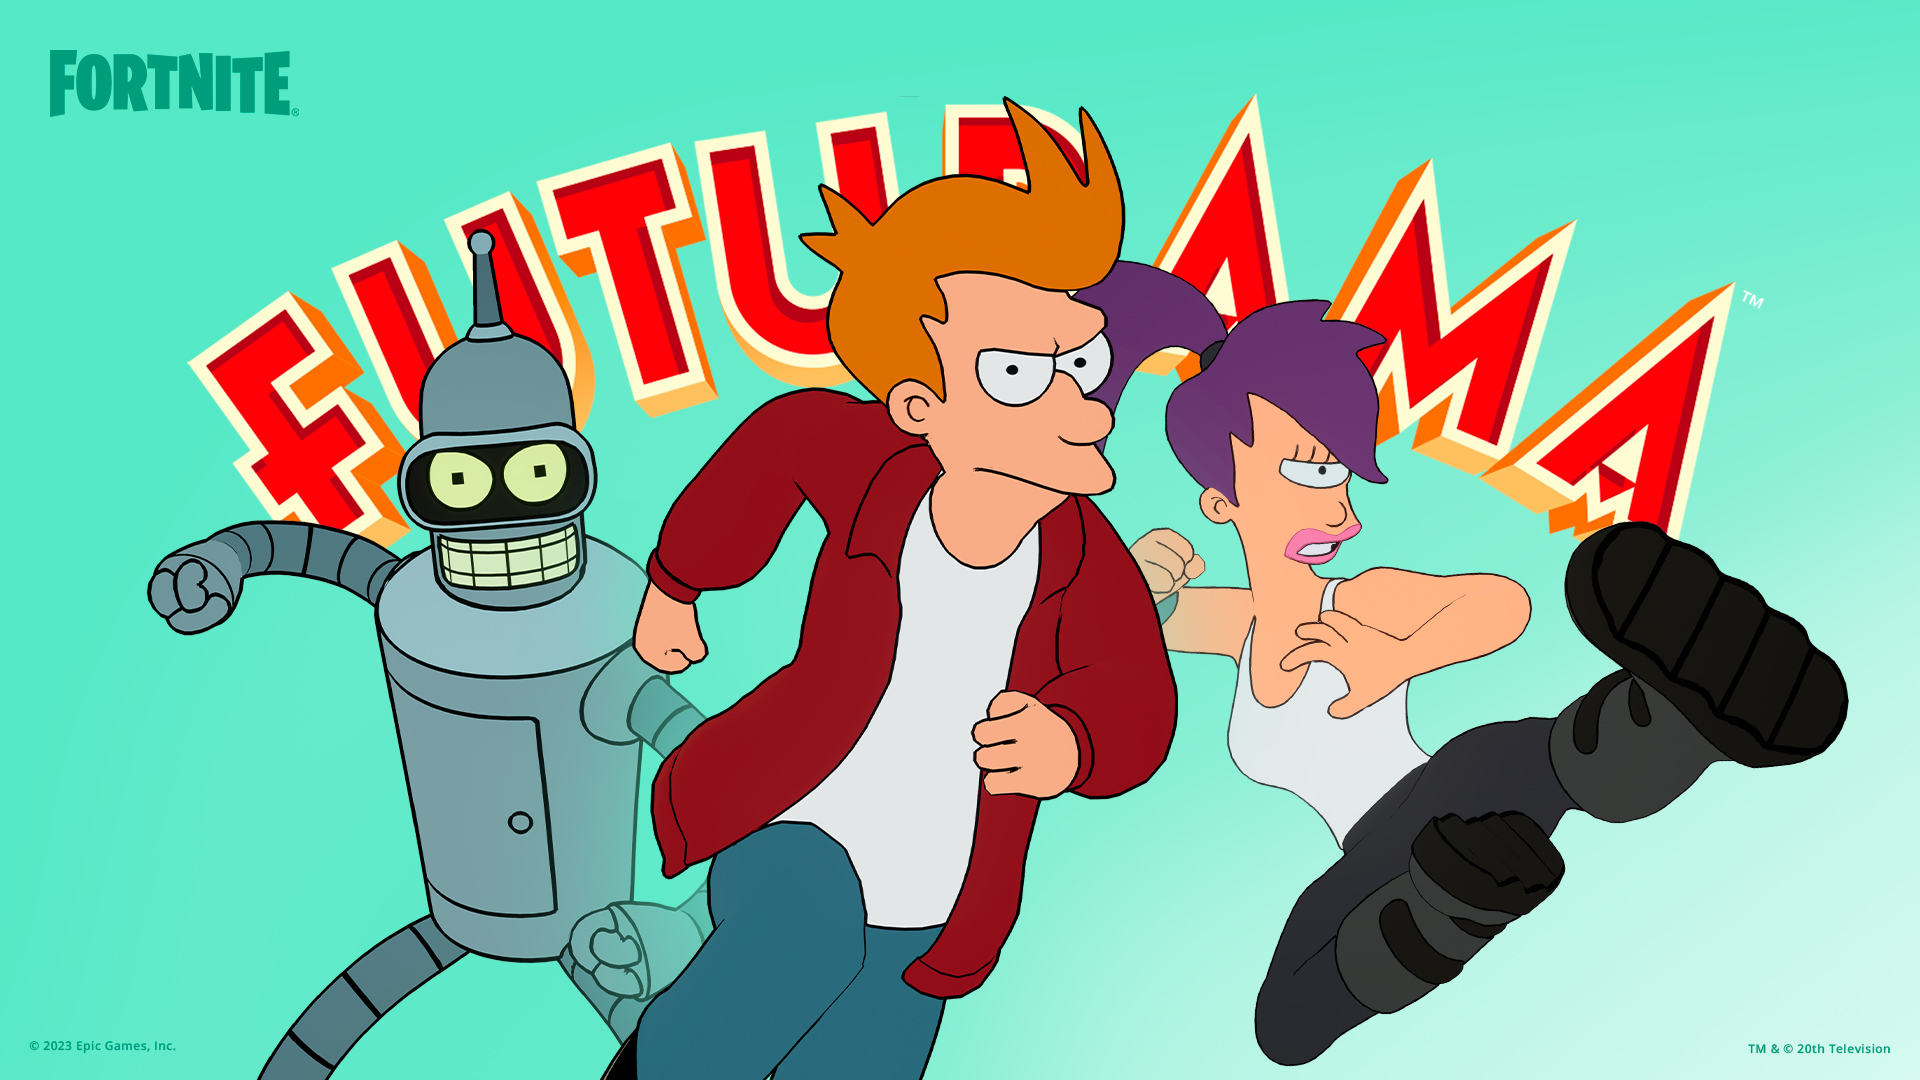 Fortnite x Futurama Release date, skins & more